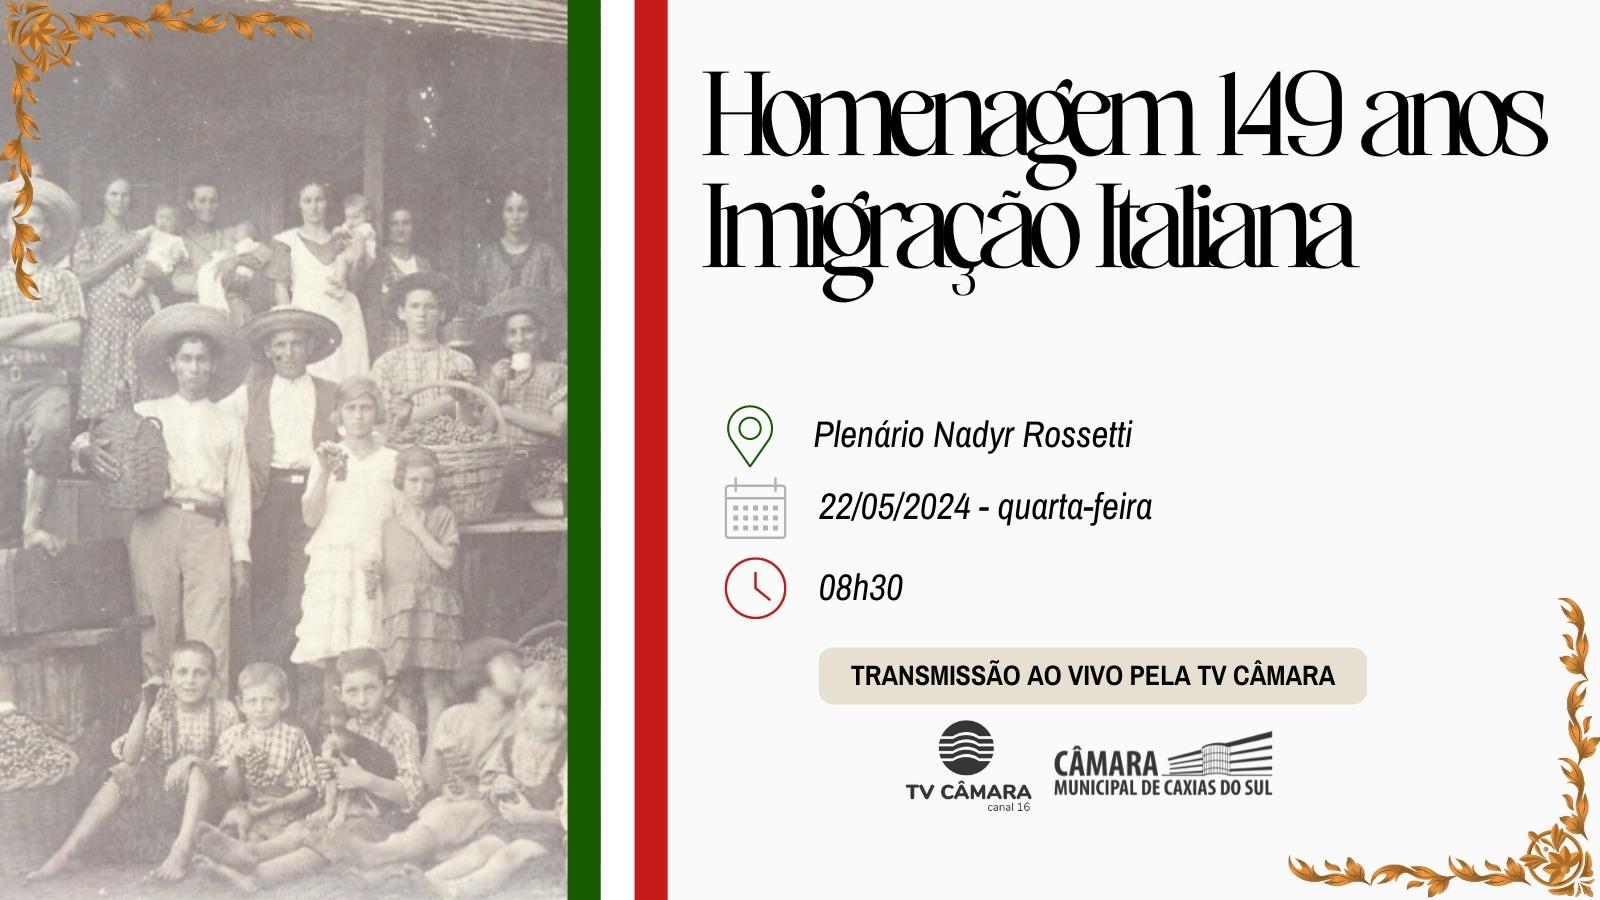 Câmara Municipal de Caxias do Sul celebrará os 149 anos da imigração e colonização italiana